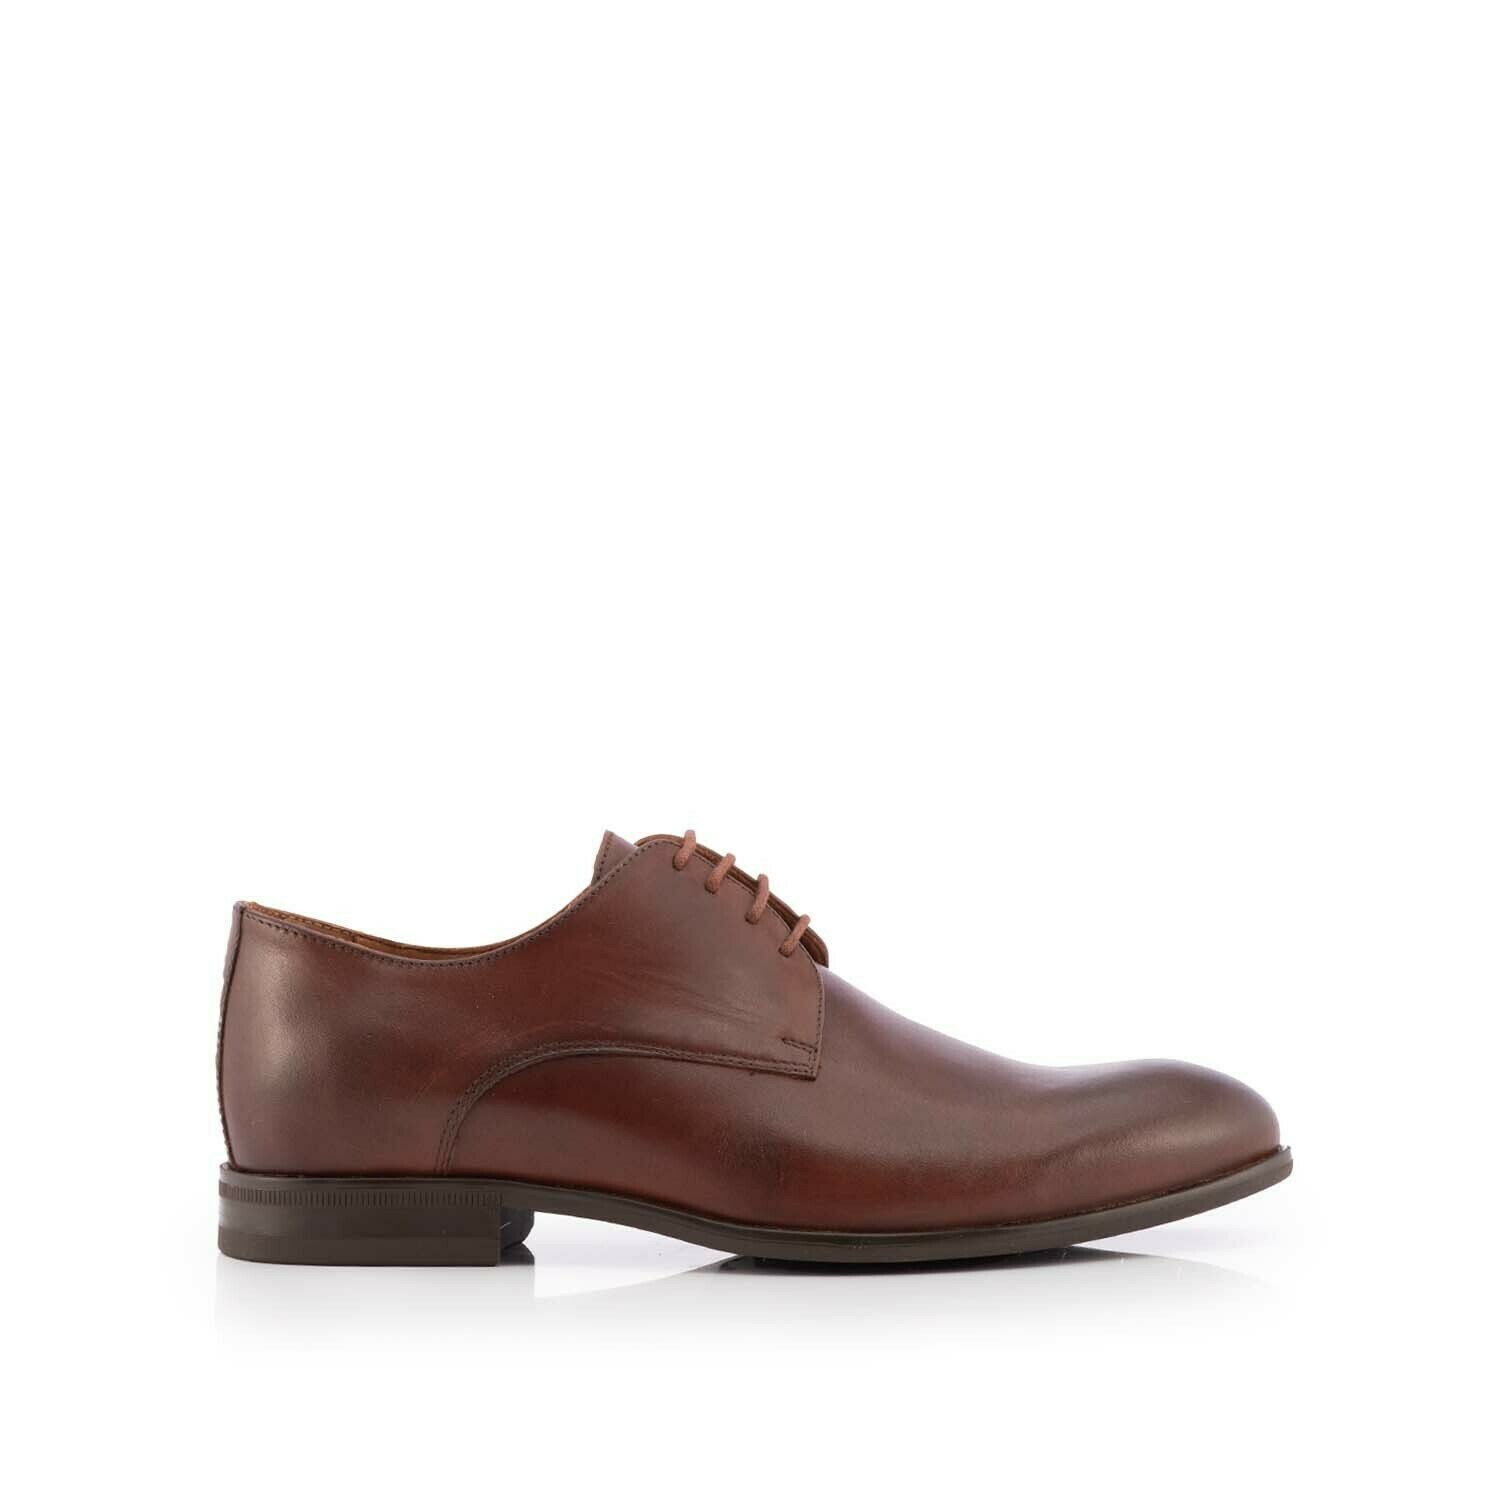 Pantofi bărbați eleganți din piele naturală, Leofex - 898 Red wood Box